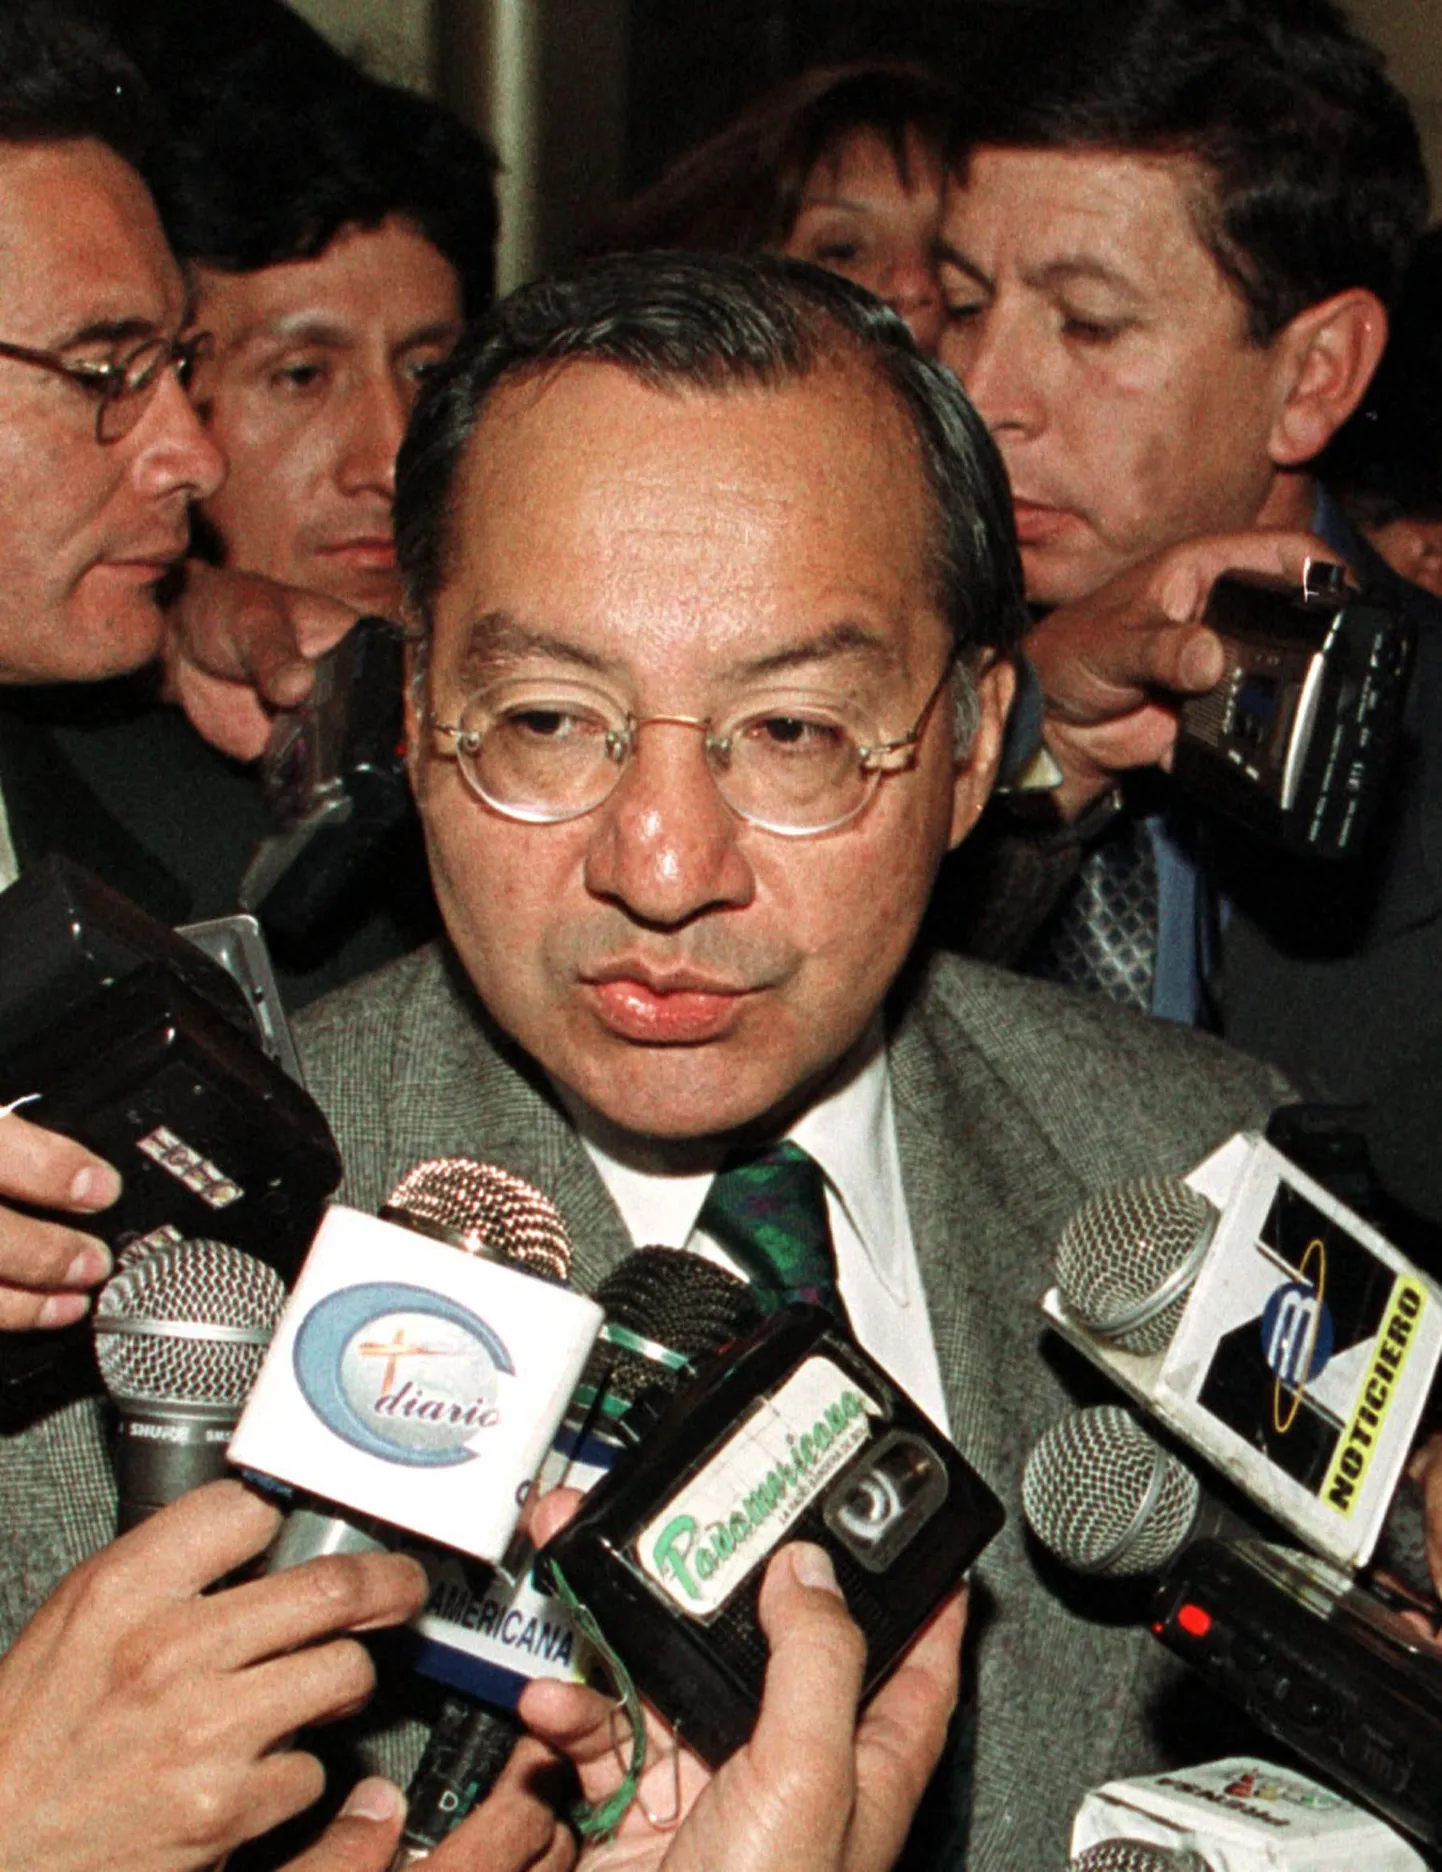 Kuuba kasuks spioneerimise eest vangi mõistetud Victor Manuel Rocha 2001. aastal USA suursaadikuna Boliivias.